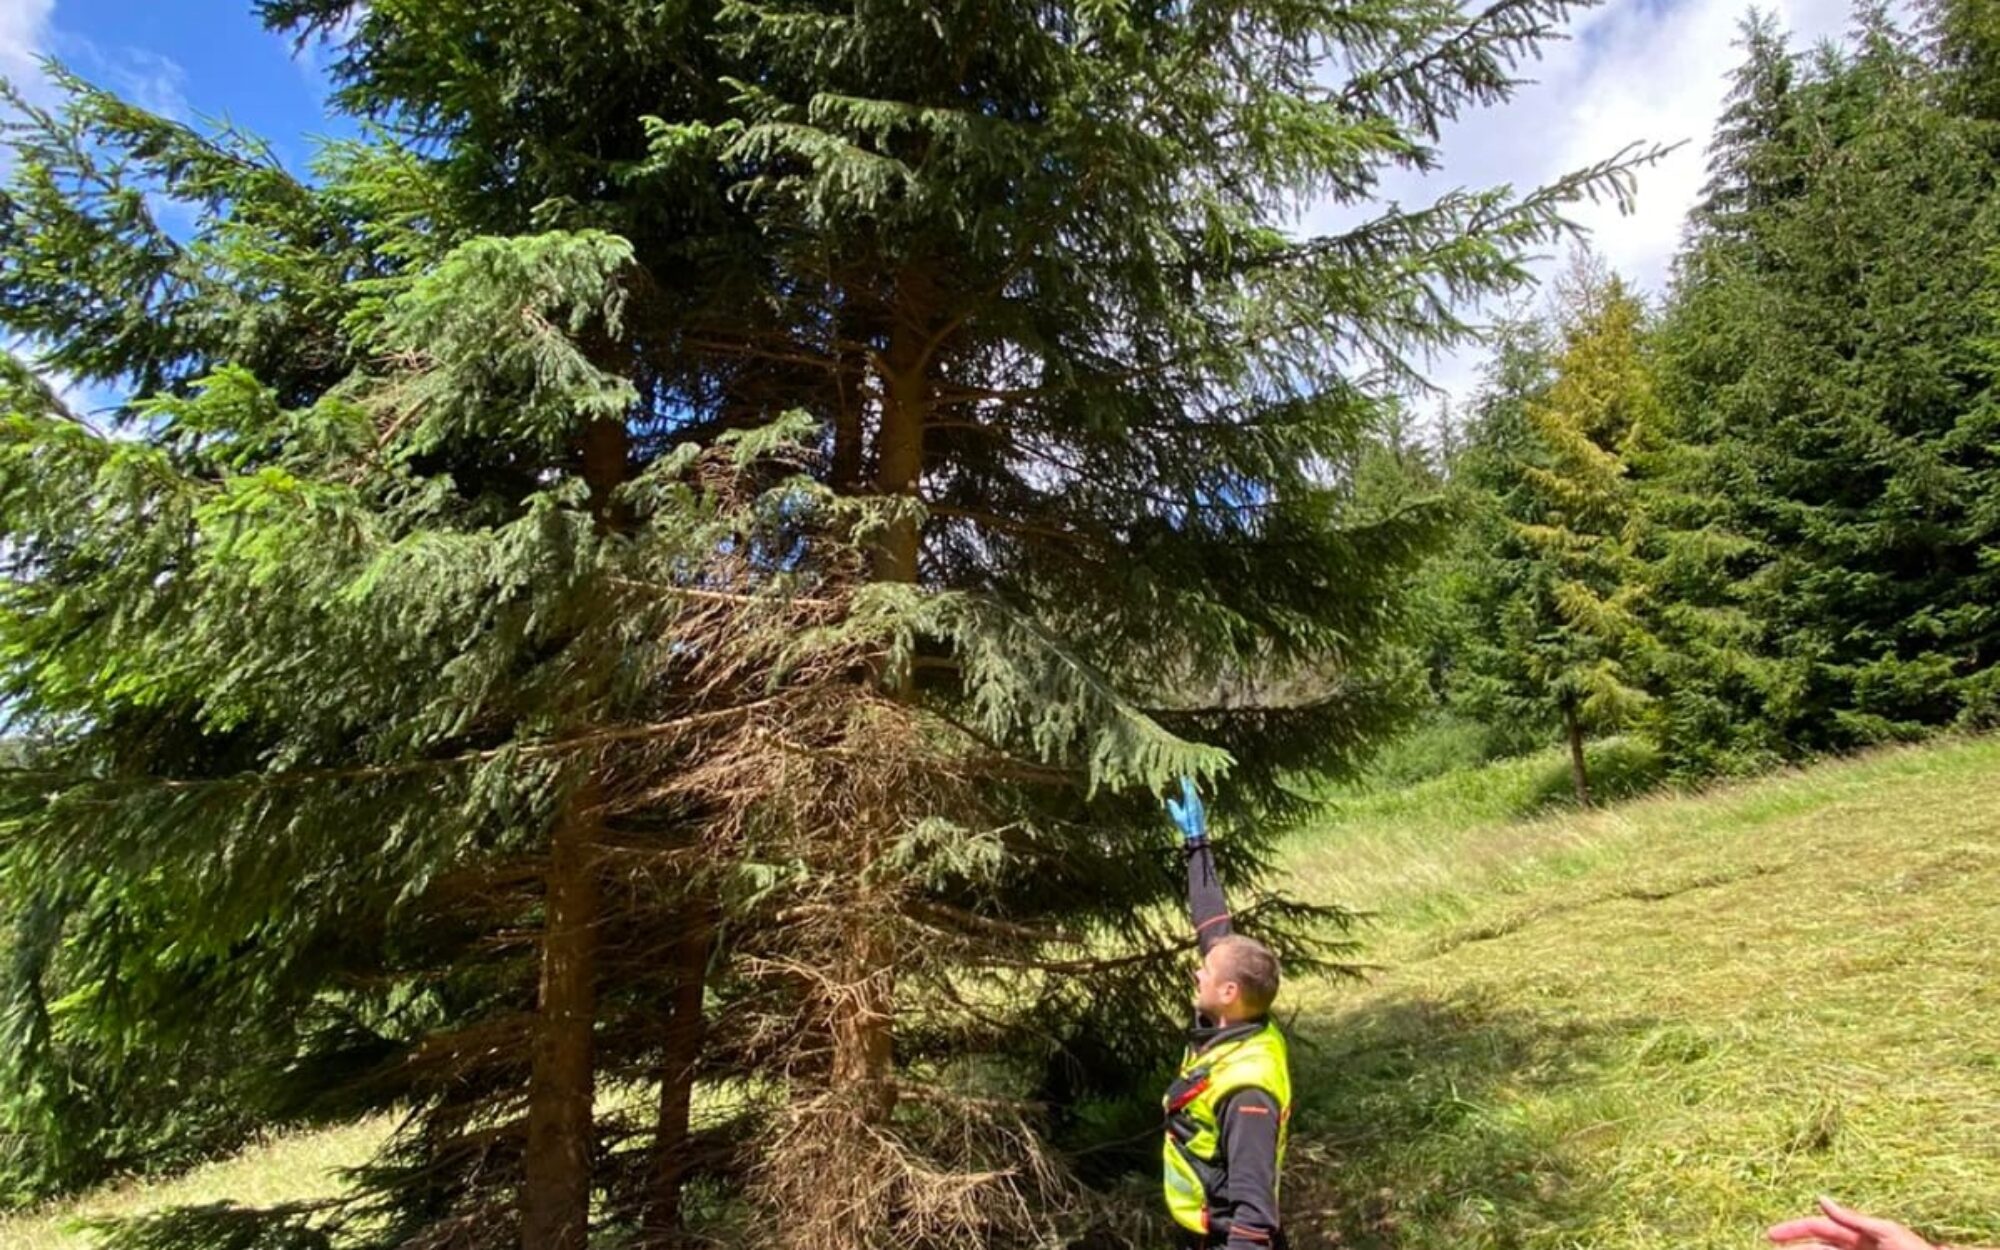 Horskí záchranári pomáhali v Terchovej poľovníkovi po páde zo stromu. Zdroj: HZS